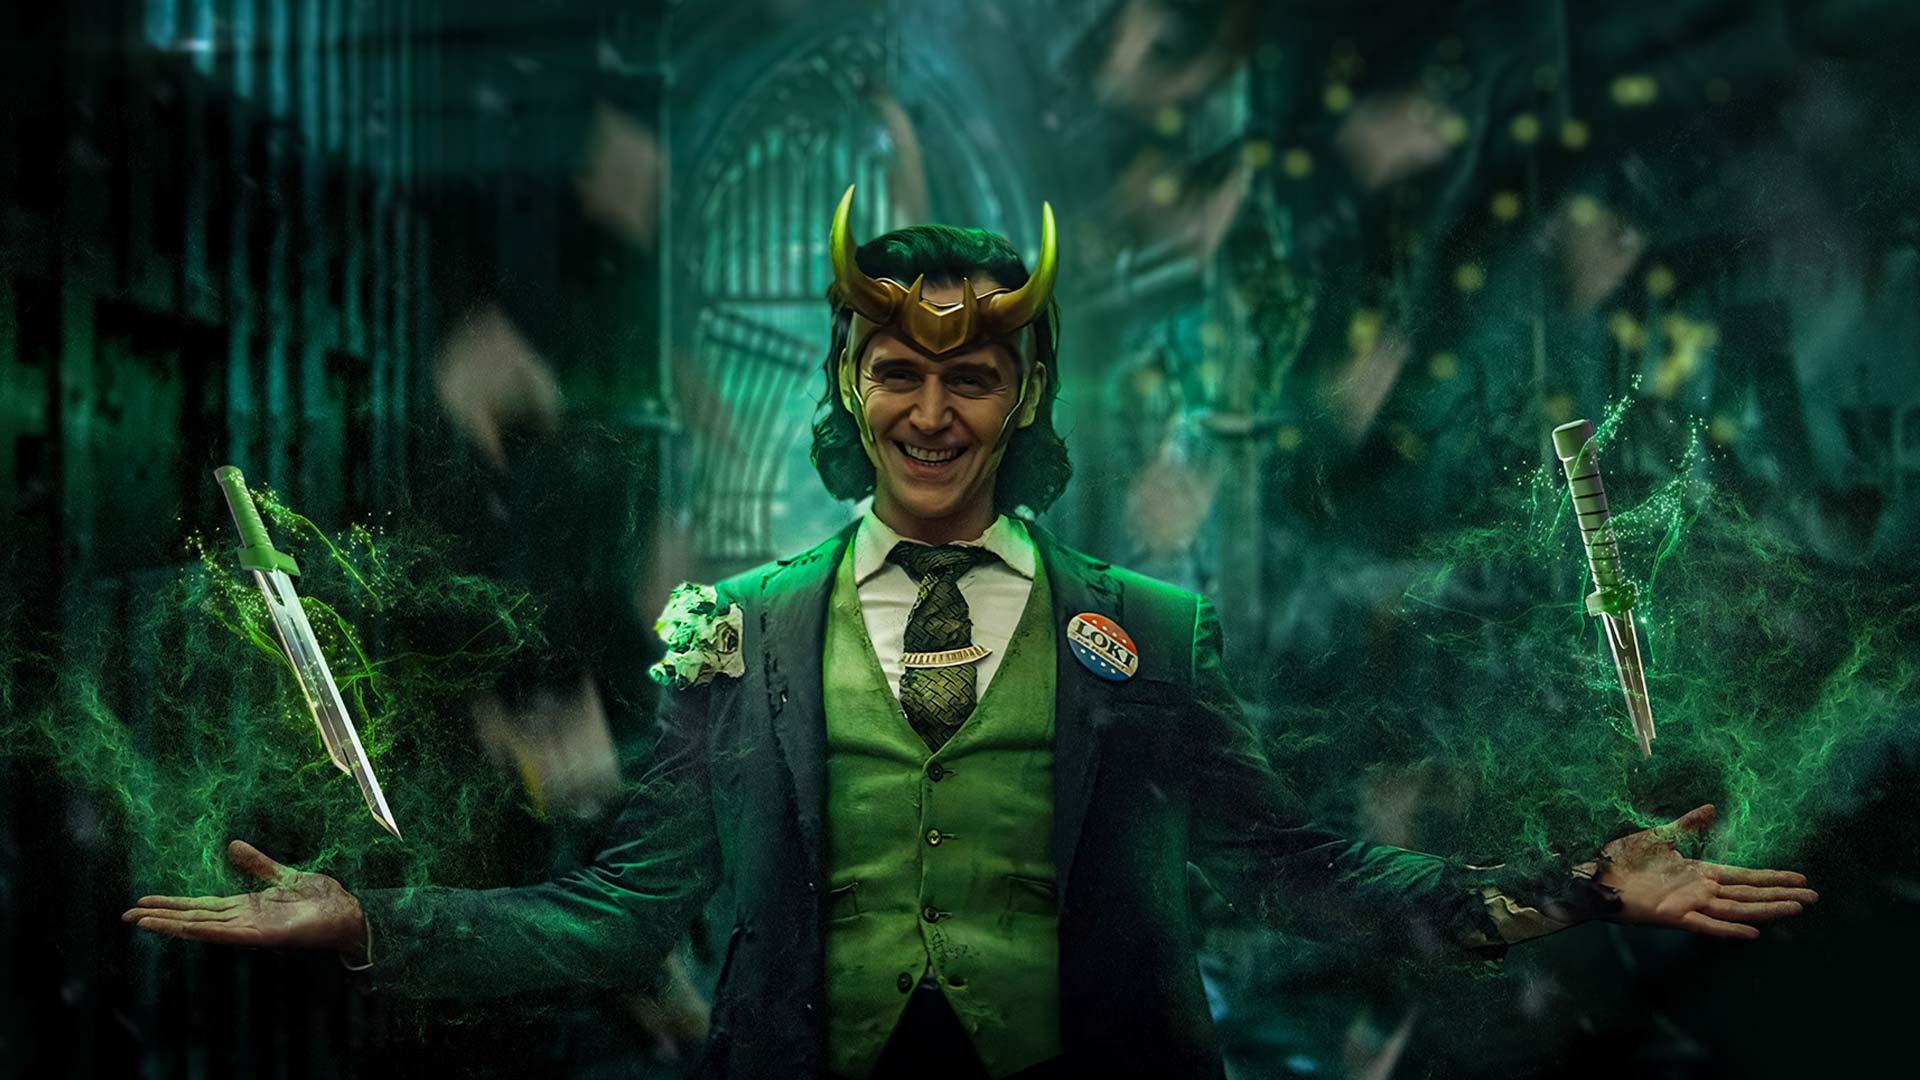 ربما مسلسل Loki منخرط مع WandaVision أكثر من المتوقع بهذا الظهور الغريب!